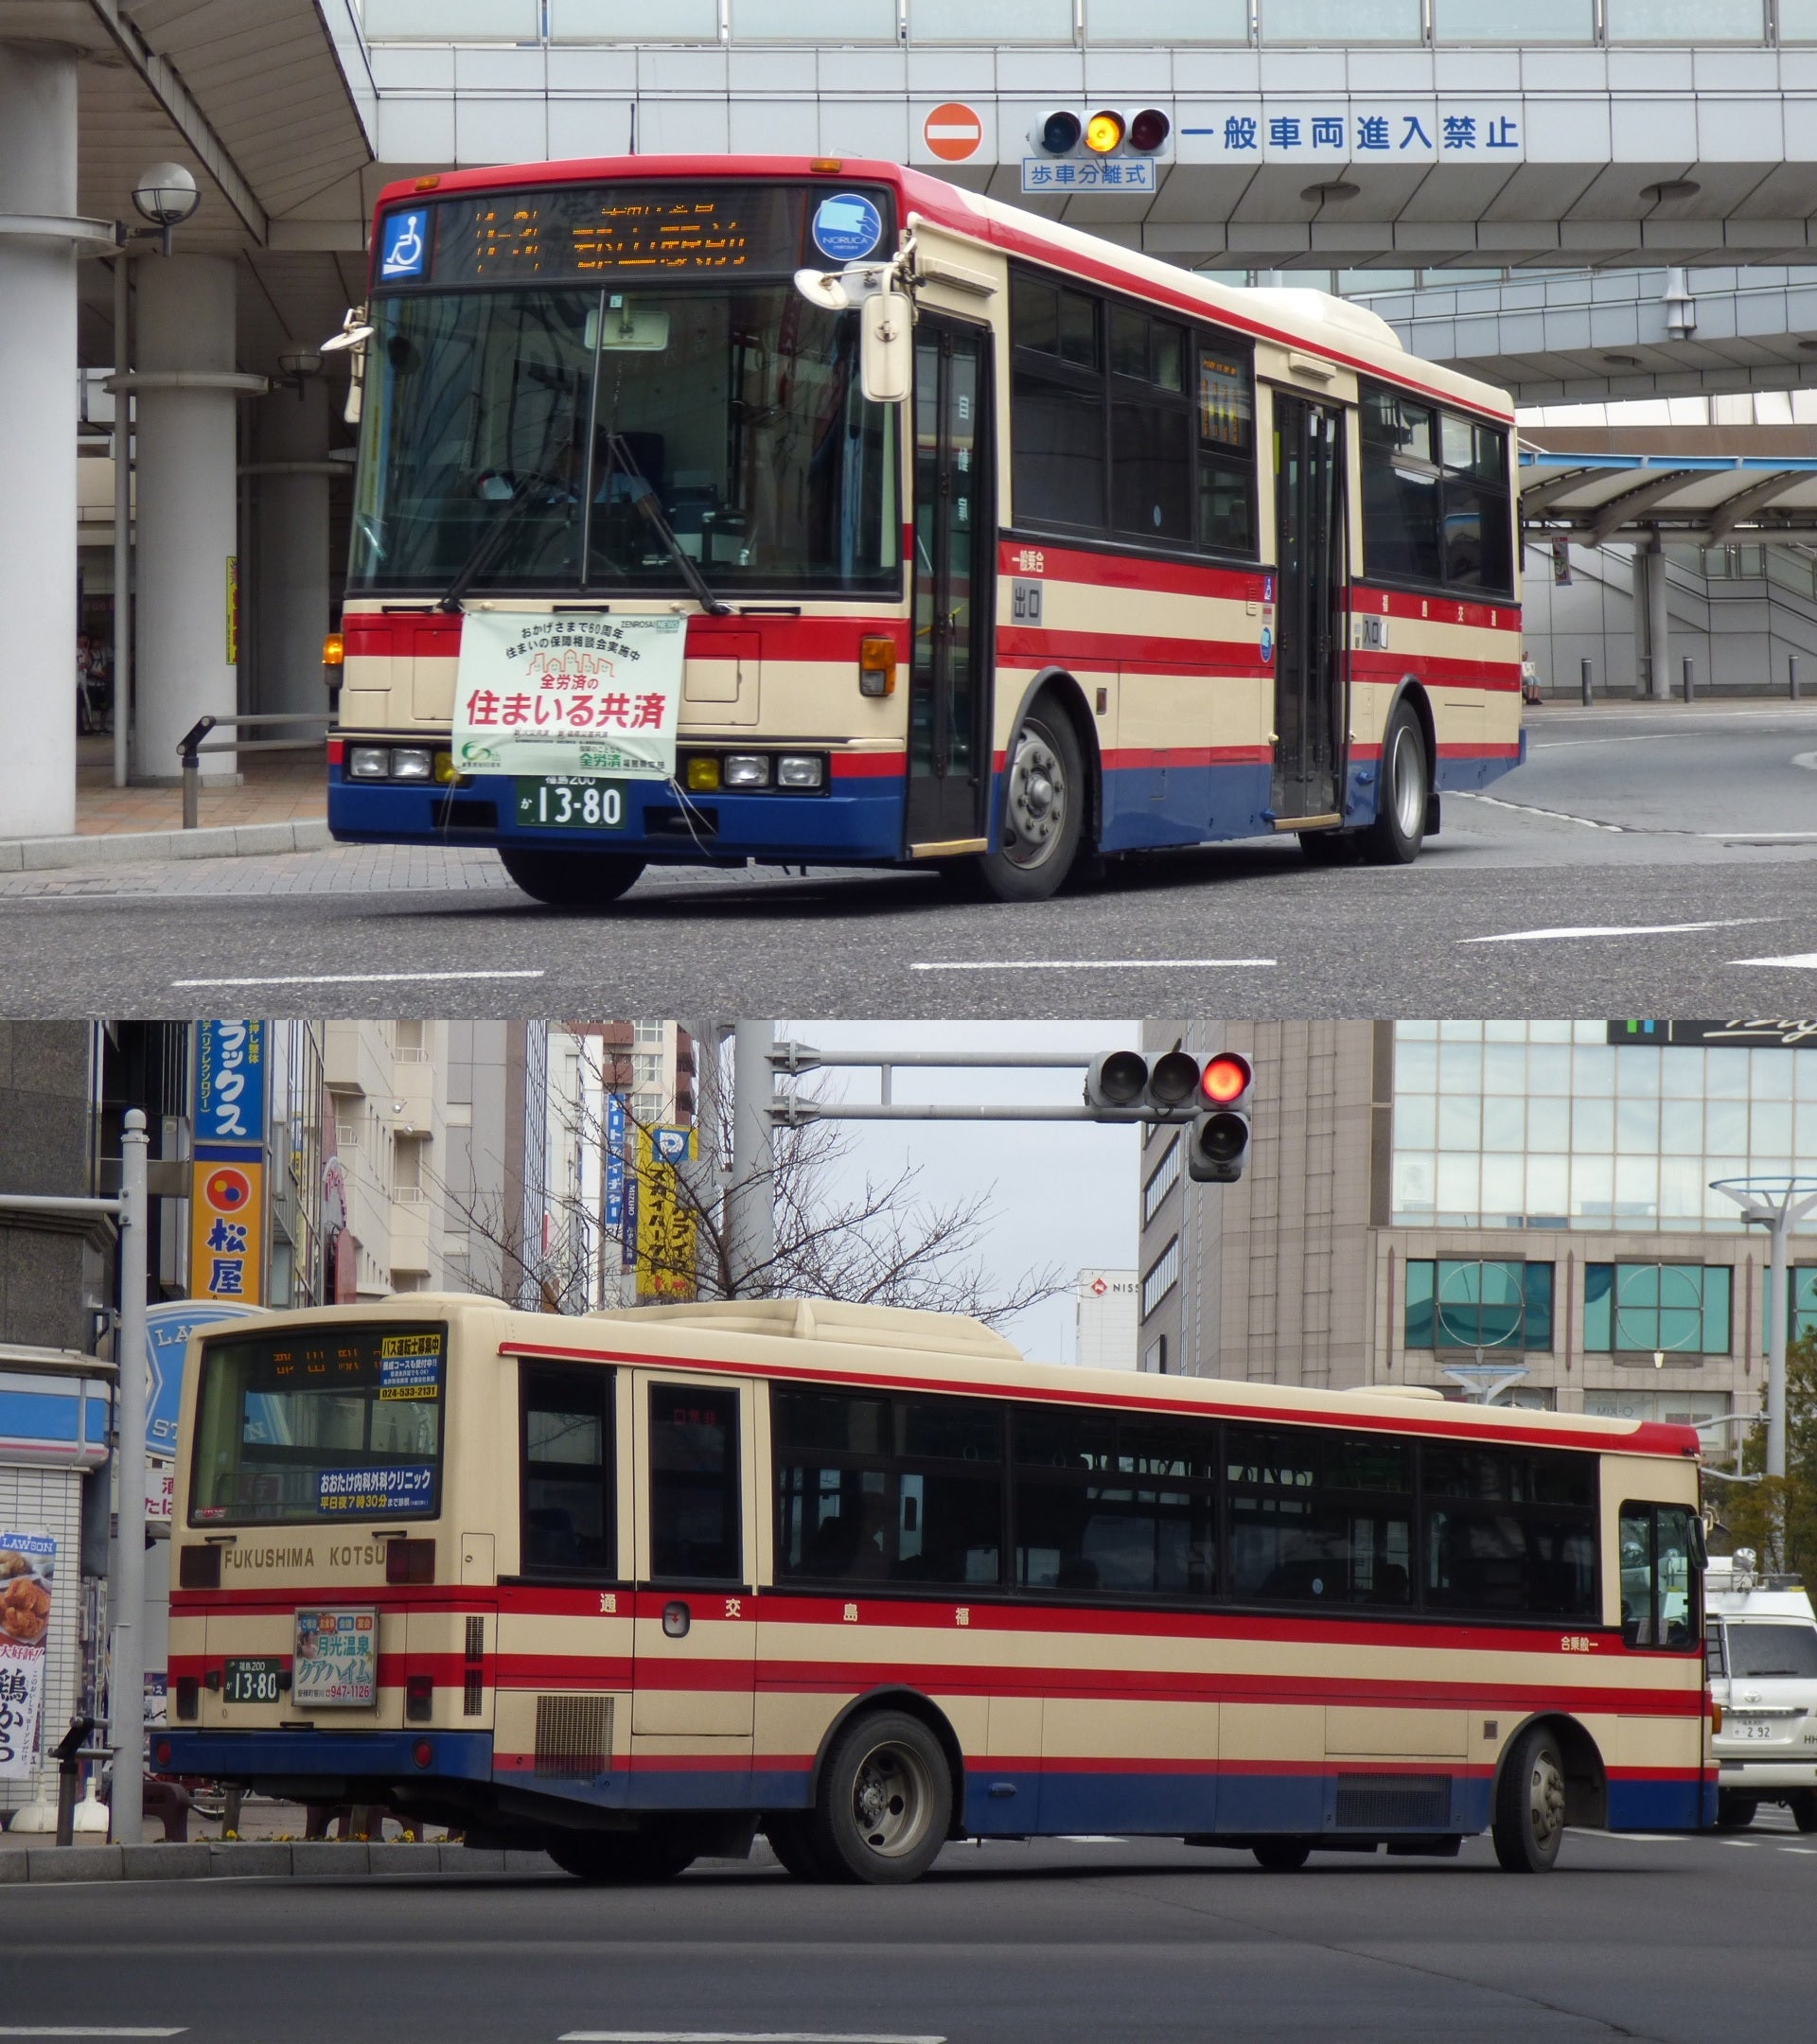 西東京ﾊﾞｽ A5719 福島交通 福島0か13 80 Hino Airloopのブログ